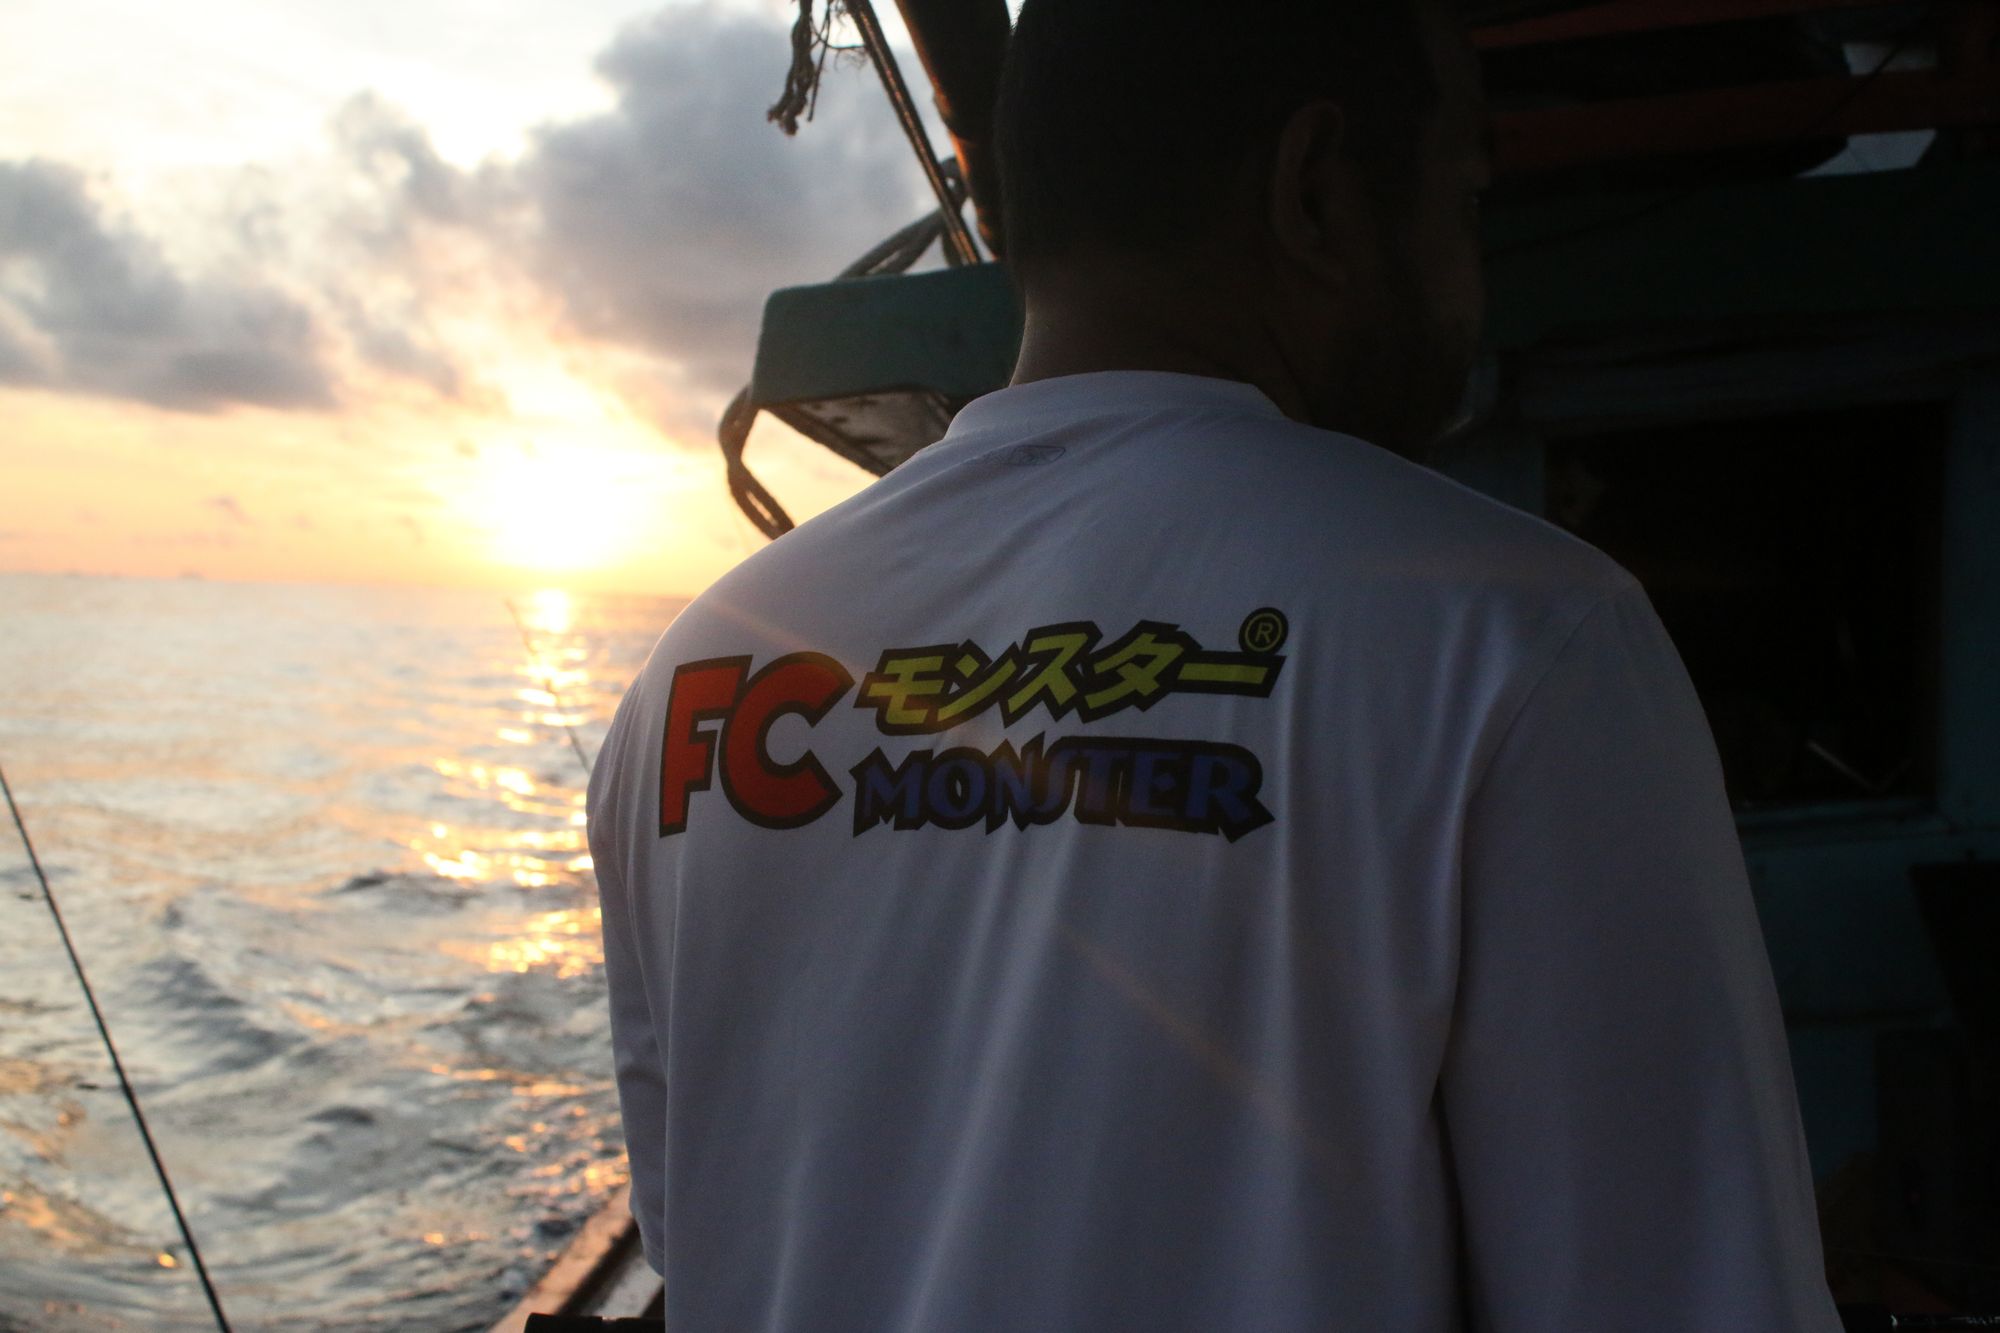 ขอบคุณ ผู้สนับสนุน ชุดทะเลให้พวกเราได้สนุกกัน FC Monstor   จาก น้าอาทิตย์ ร้านชิงหลิวครับ :prost: :p